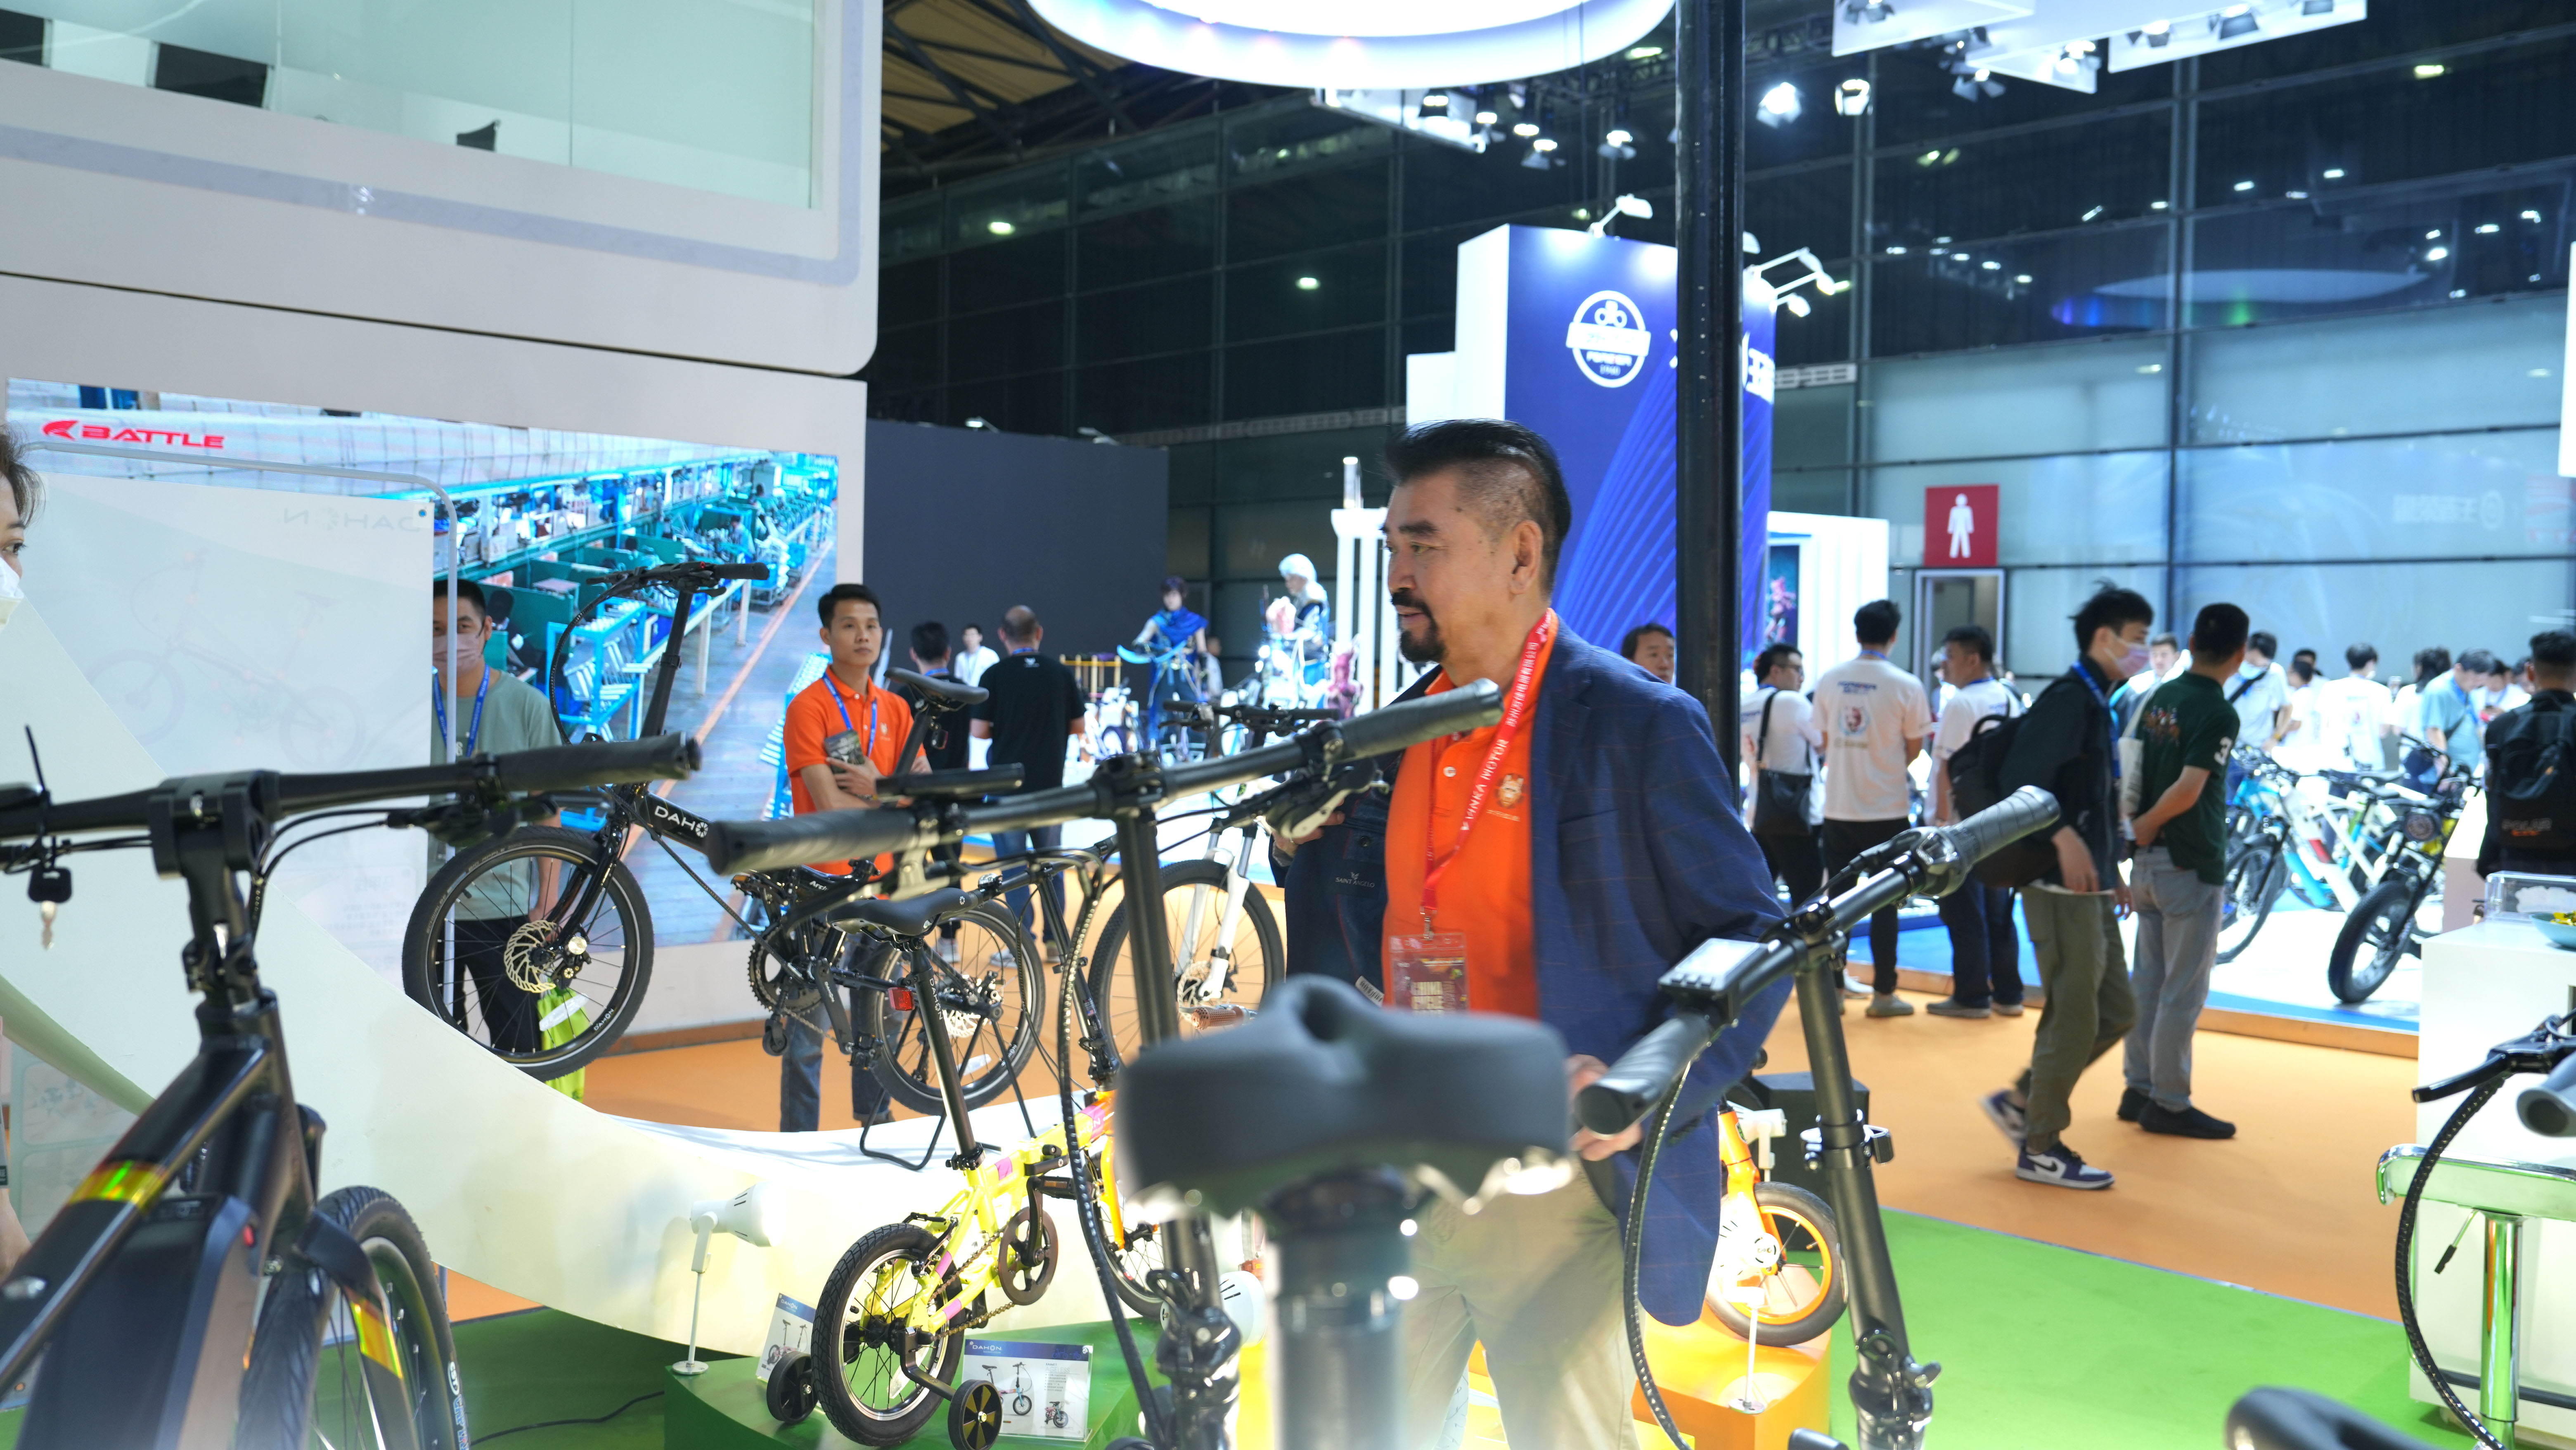 上海自行车展现场,dahon,DAHON品牌